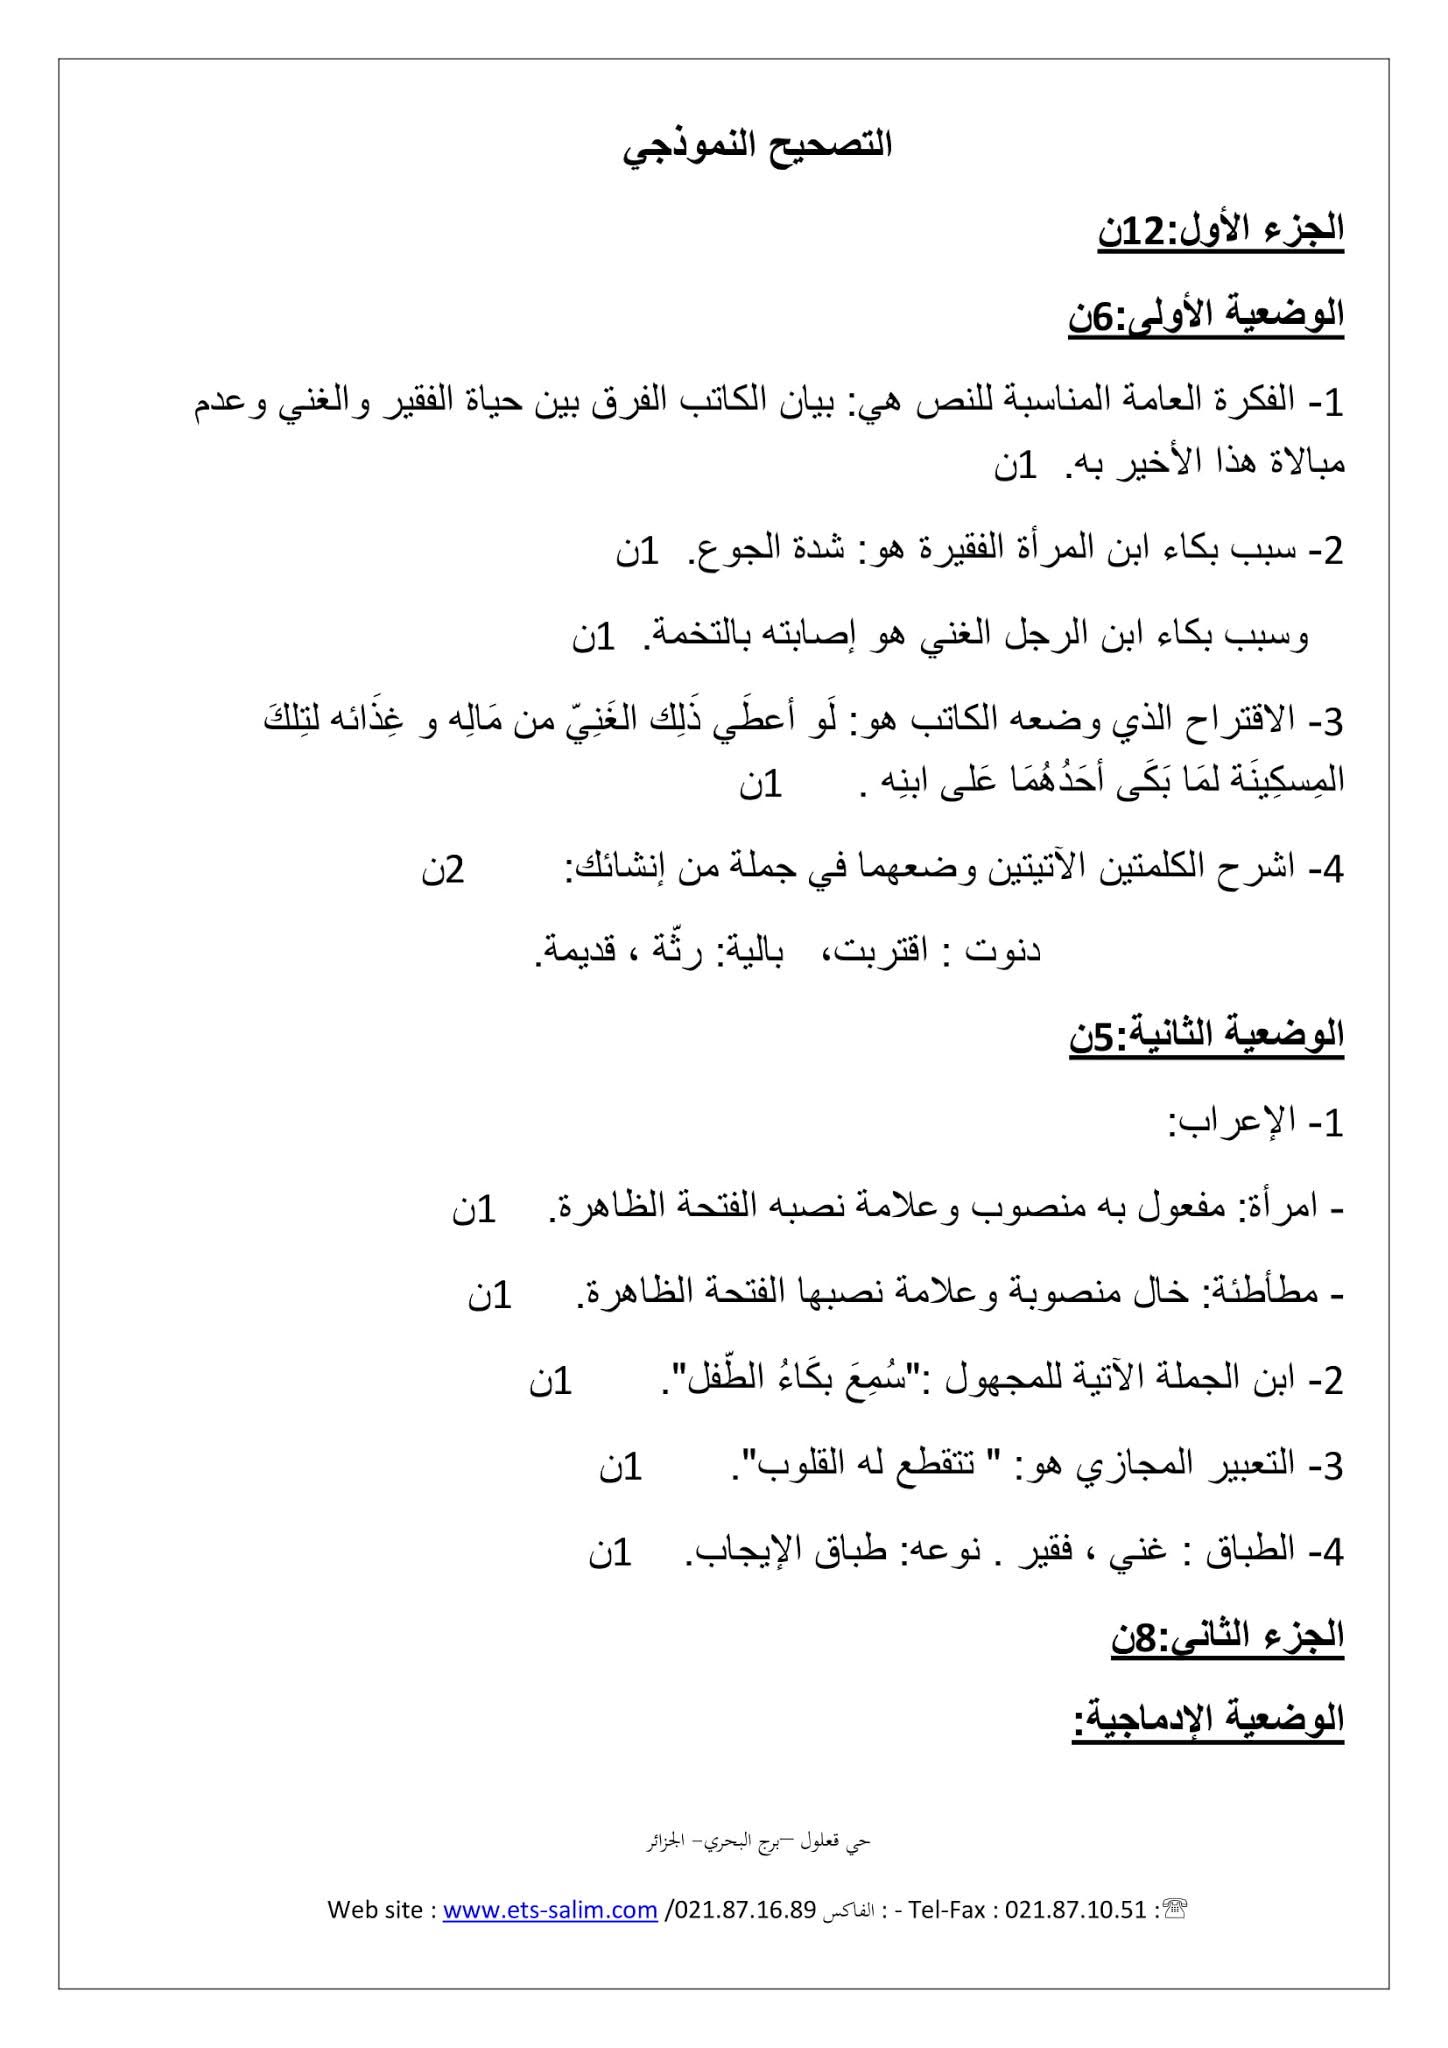 فرض اللغة العربية الفصل الثاني للسنة الأولى متوسط - الجيل الثاني نموذج 2